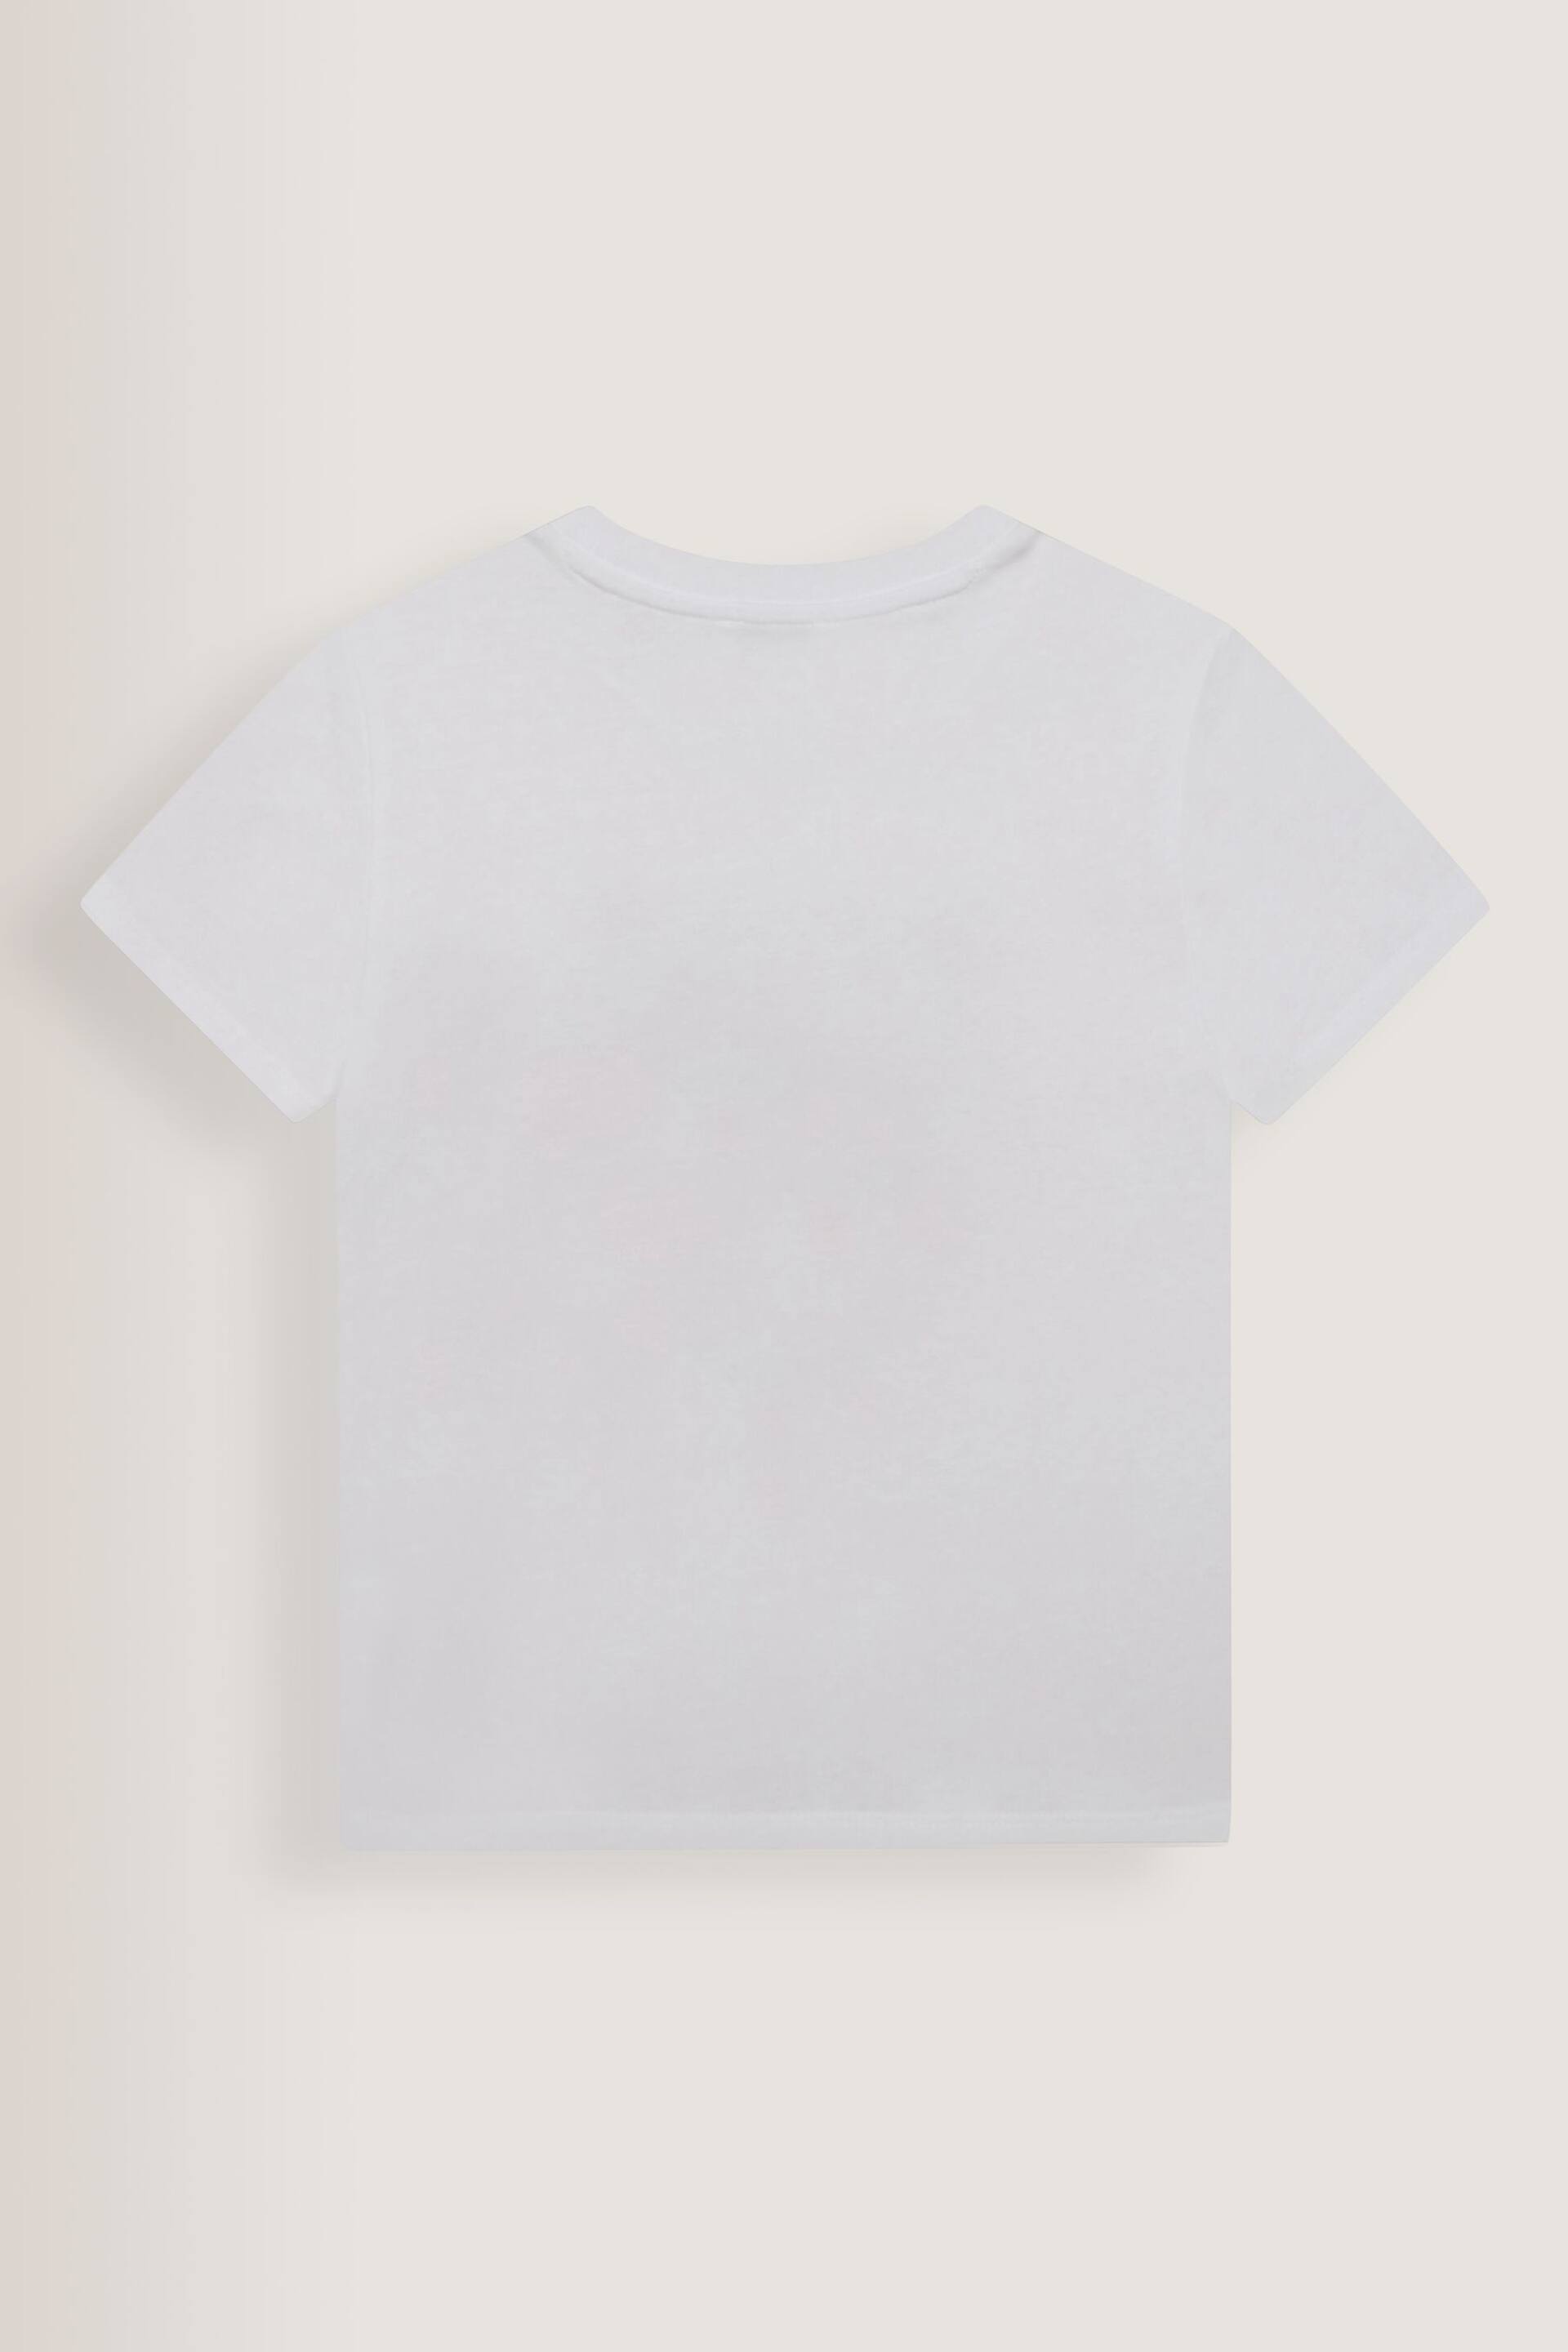 KENZO KIDS Tiger Multi/White Print Logo T-Shirt - Image 2 of 2